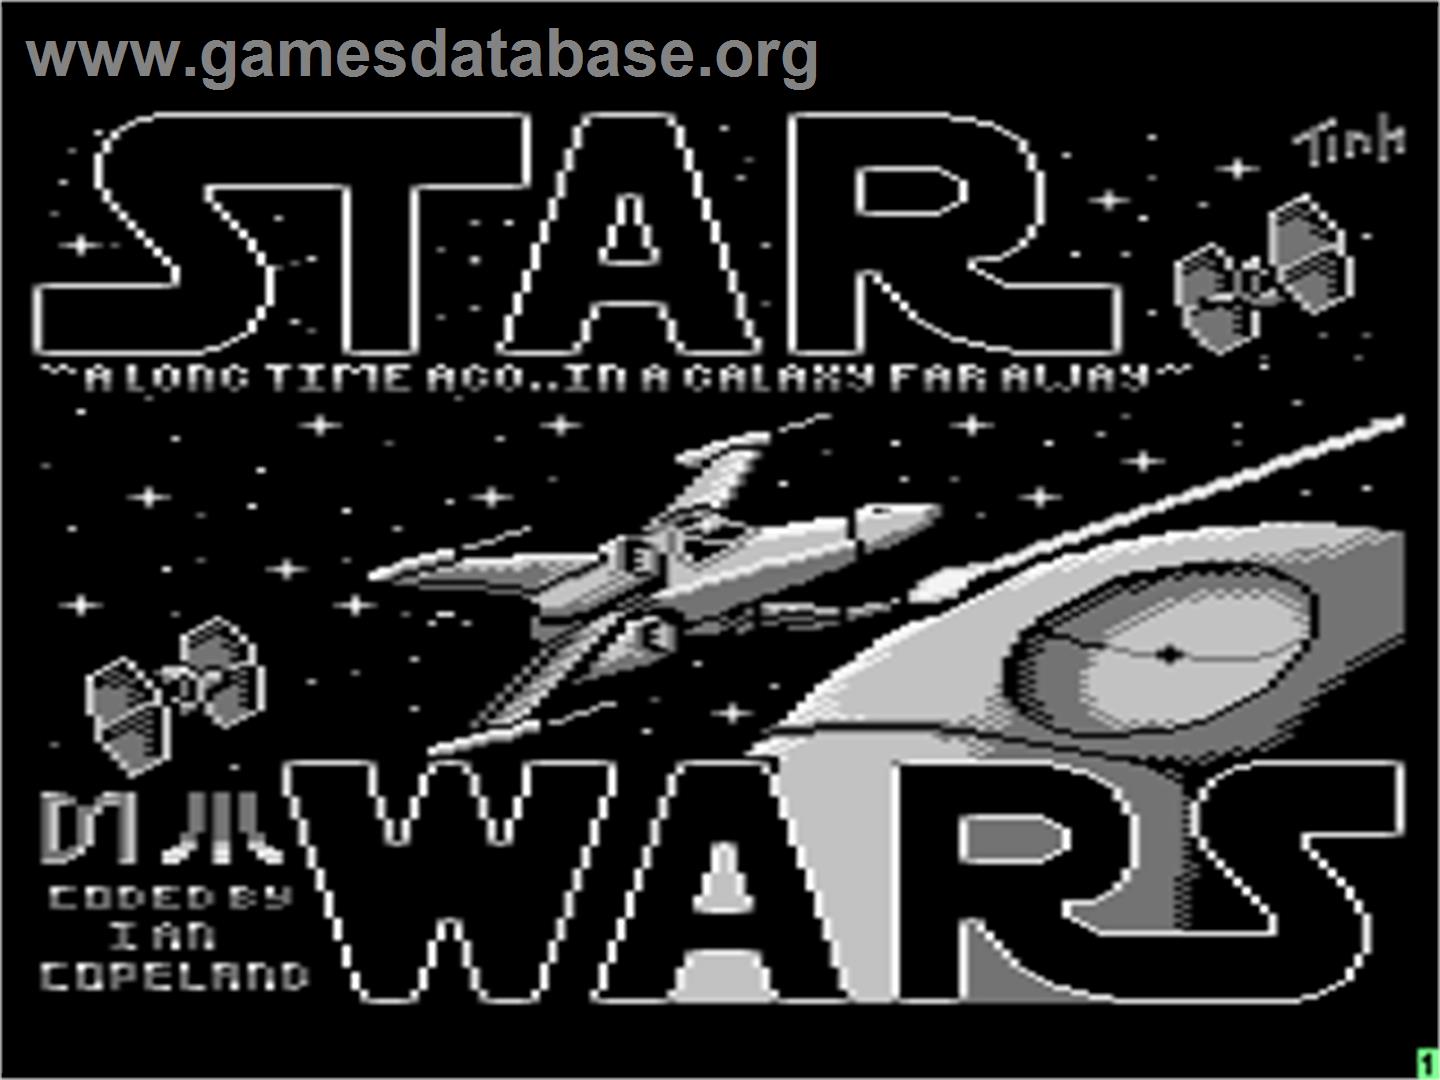 Star Wars: Return of the Jedi - Death Star Battle - Atari 8-bit - Artwork - Title Screen